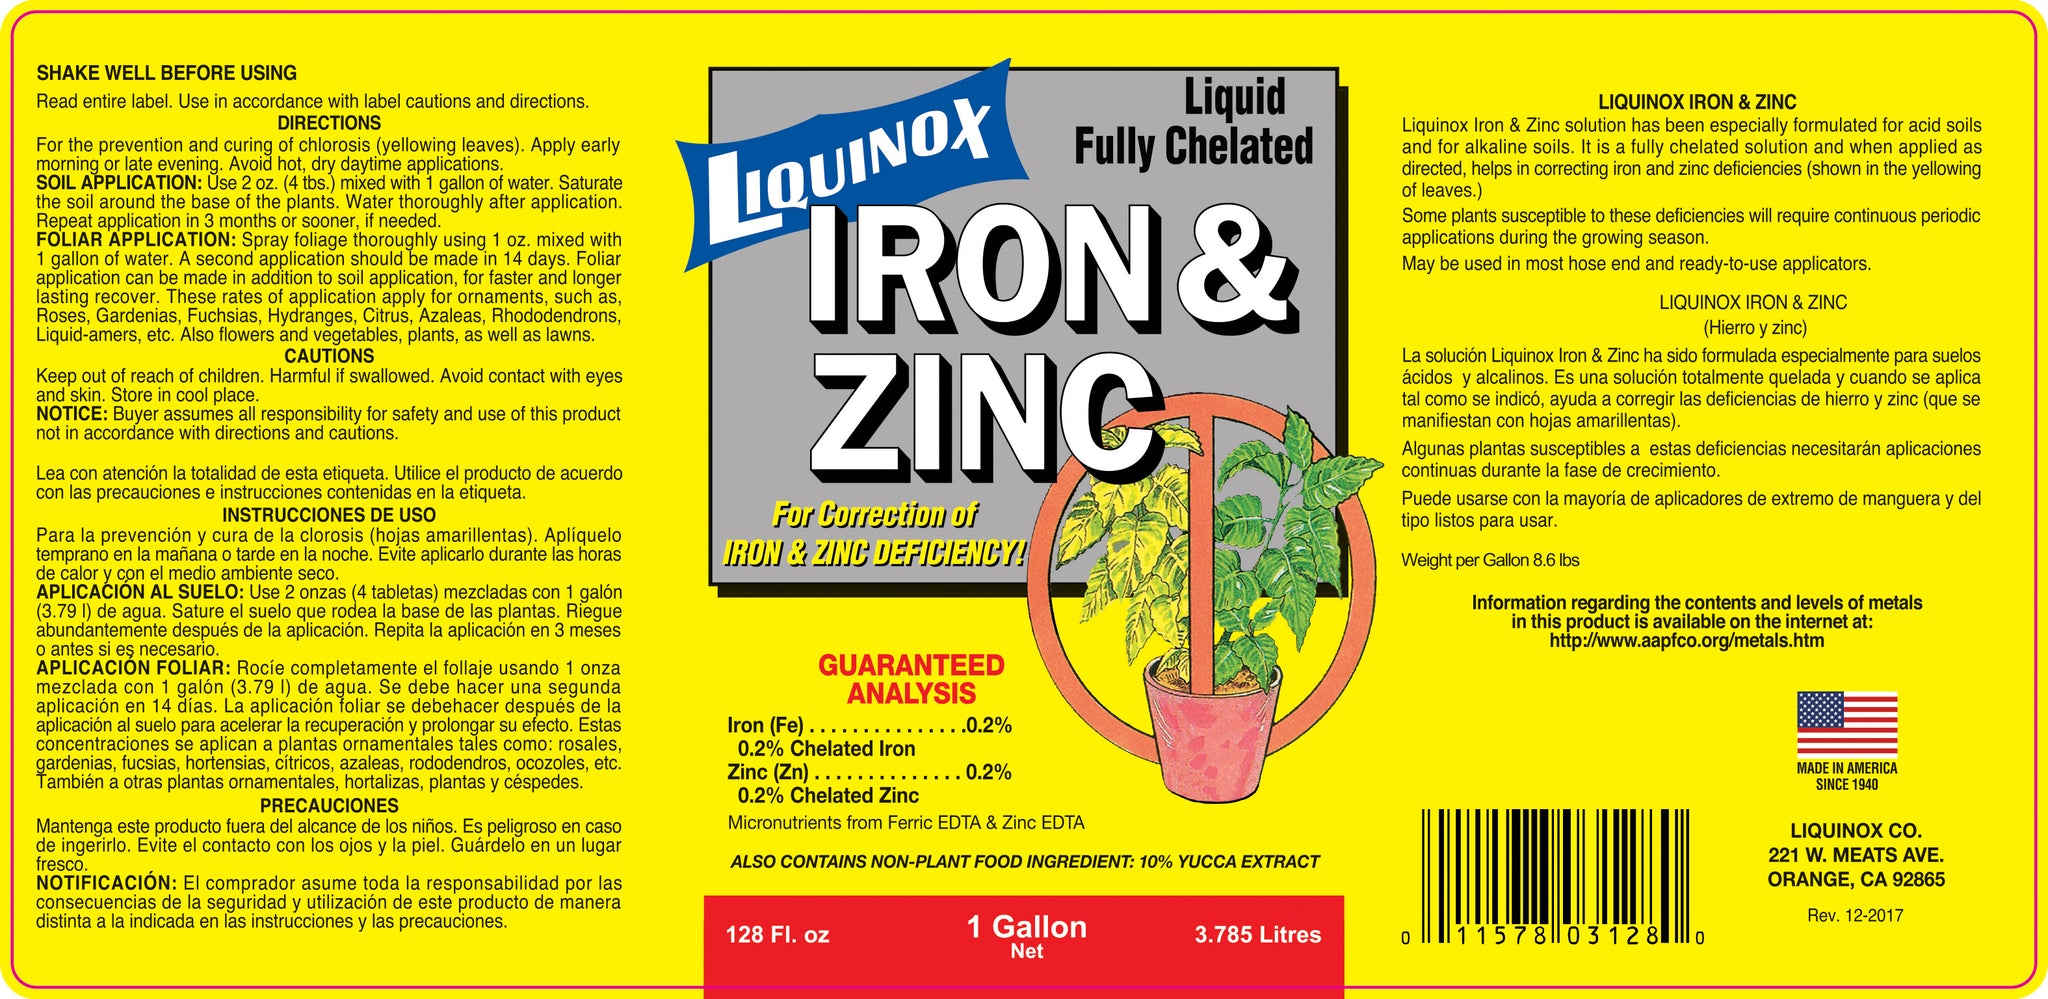 Iron & Zin Label